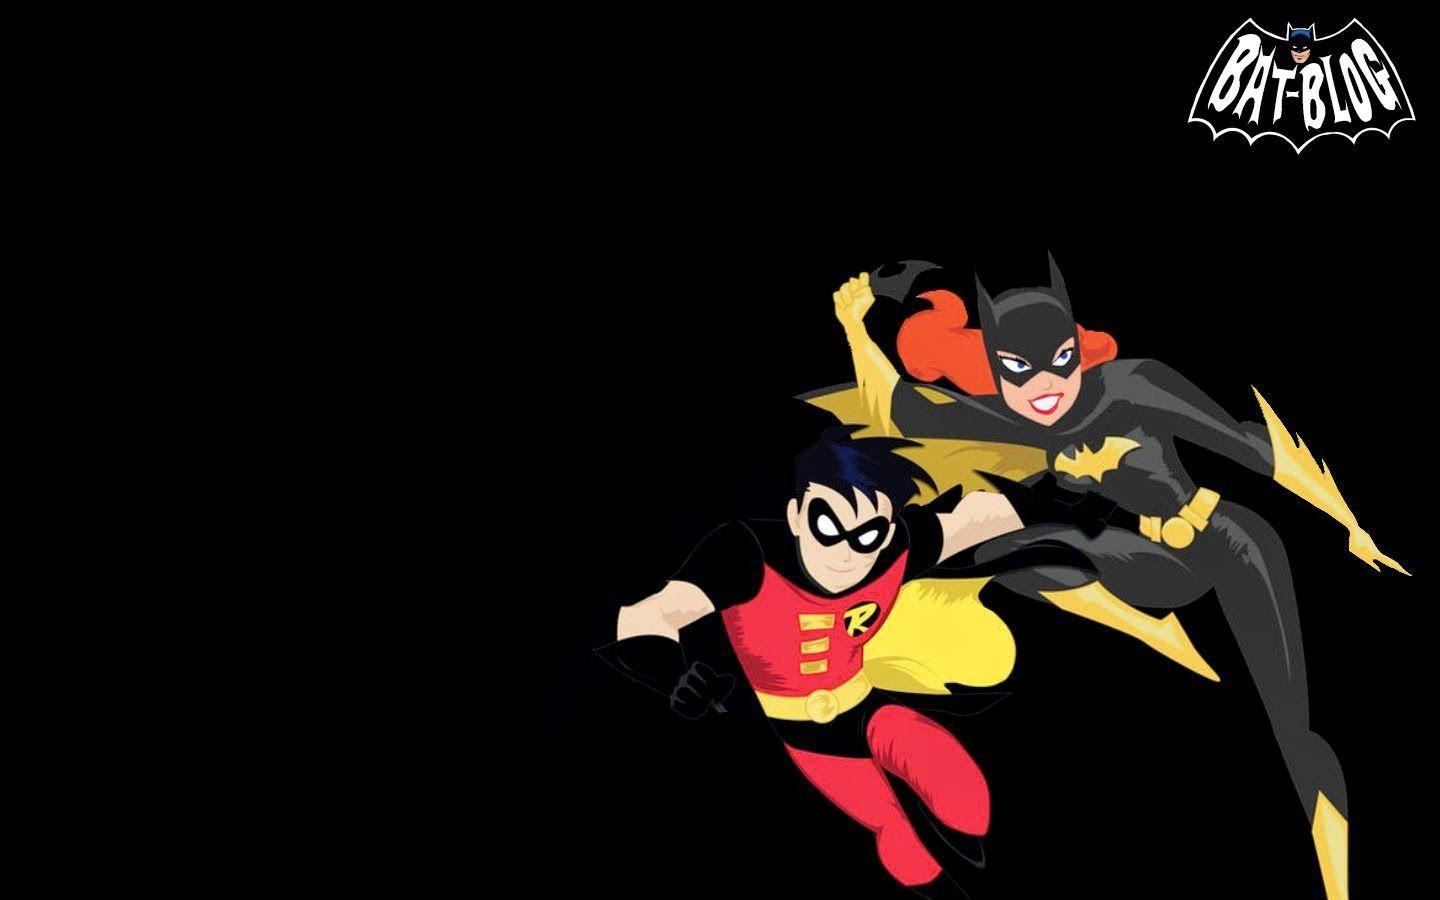 BAT, BATMAN TOYS and COLLECTIBLES: BATGIRL AND ROBIN #Batman Wallpaper